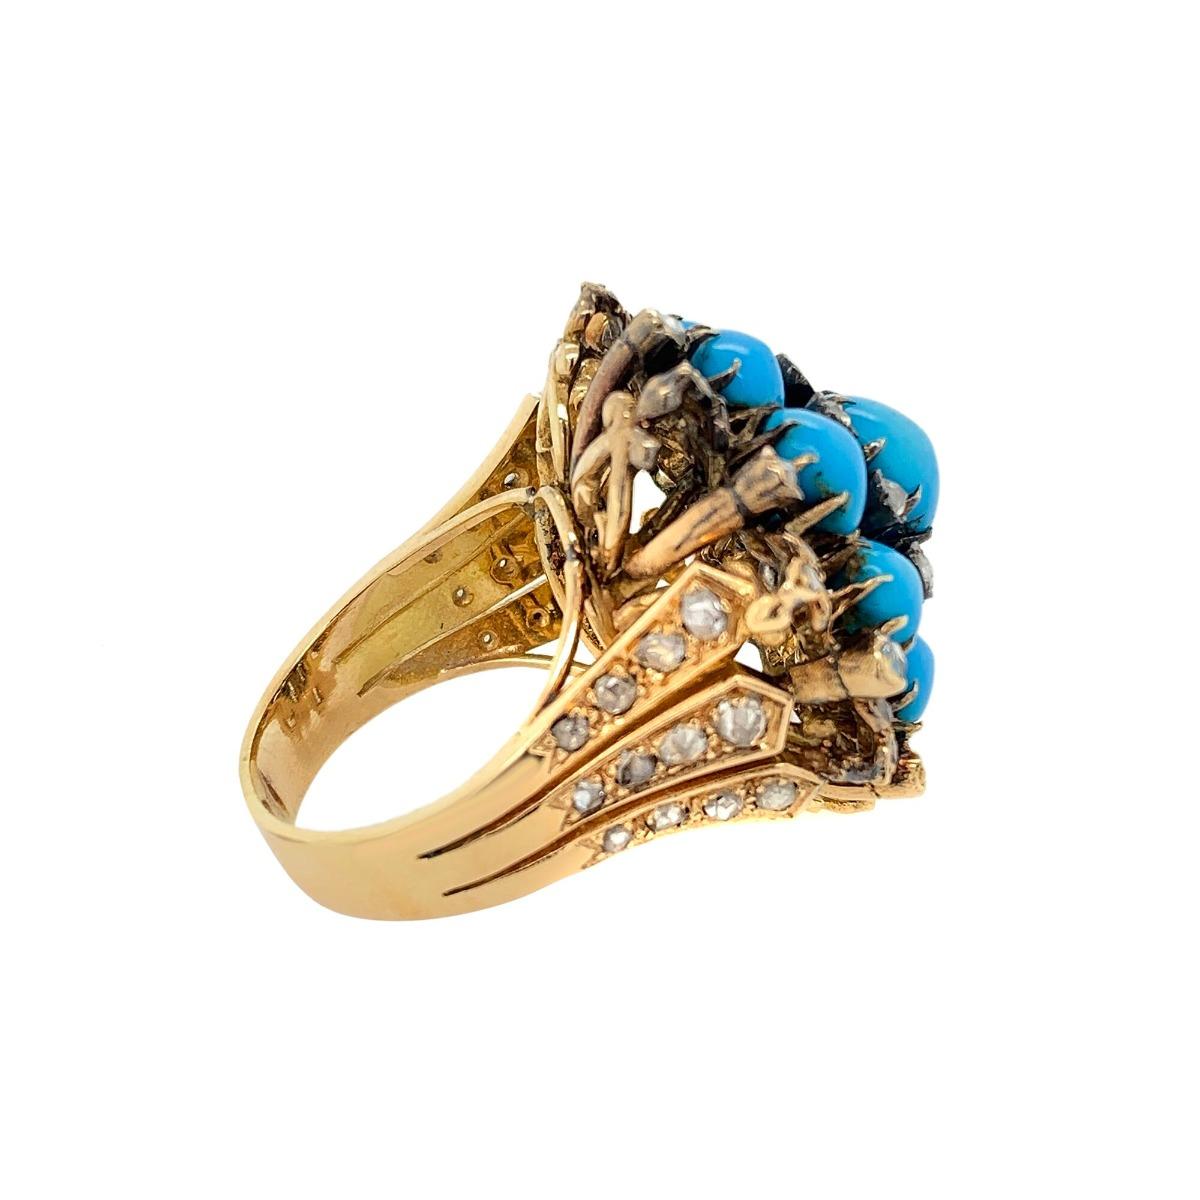 Women's 18 Karat Gold Turquoise and Rose Cut Diamond Ring